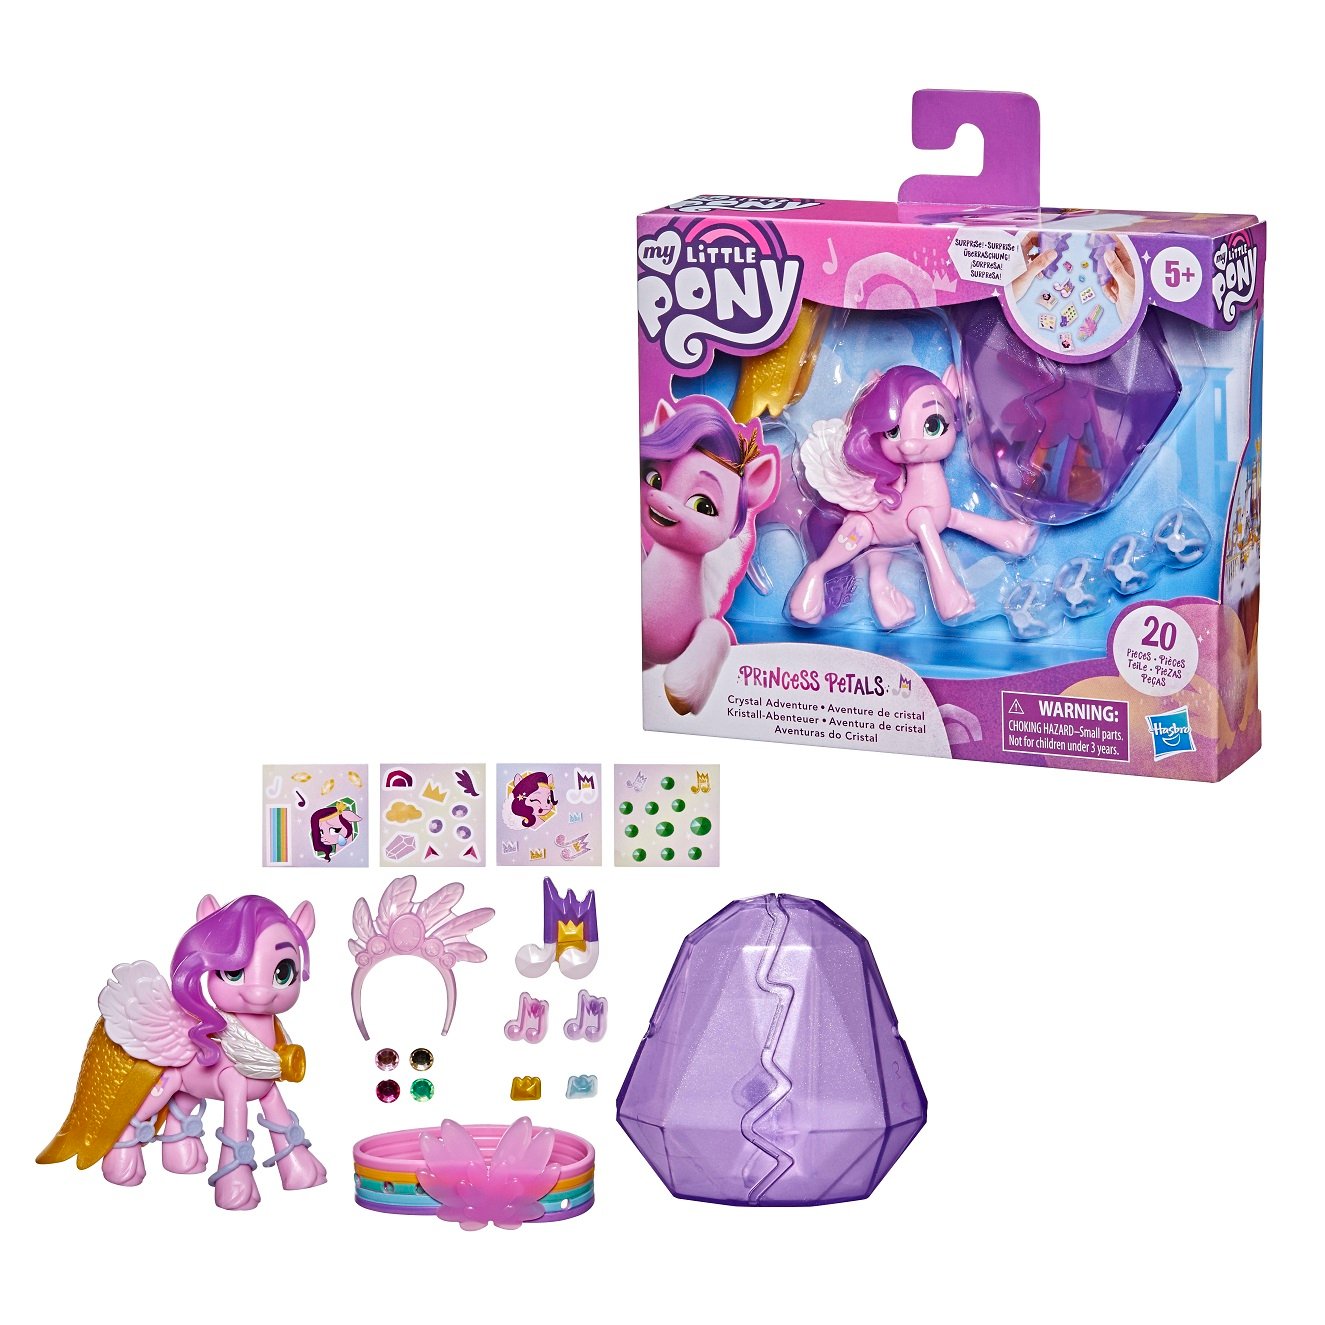 Ігровий набір Hasbro My Little Pony Кришталева Імперія Принцеса Петалс (F2453) - фото 3